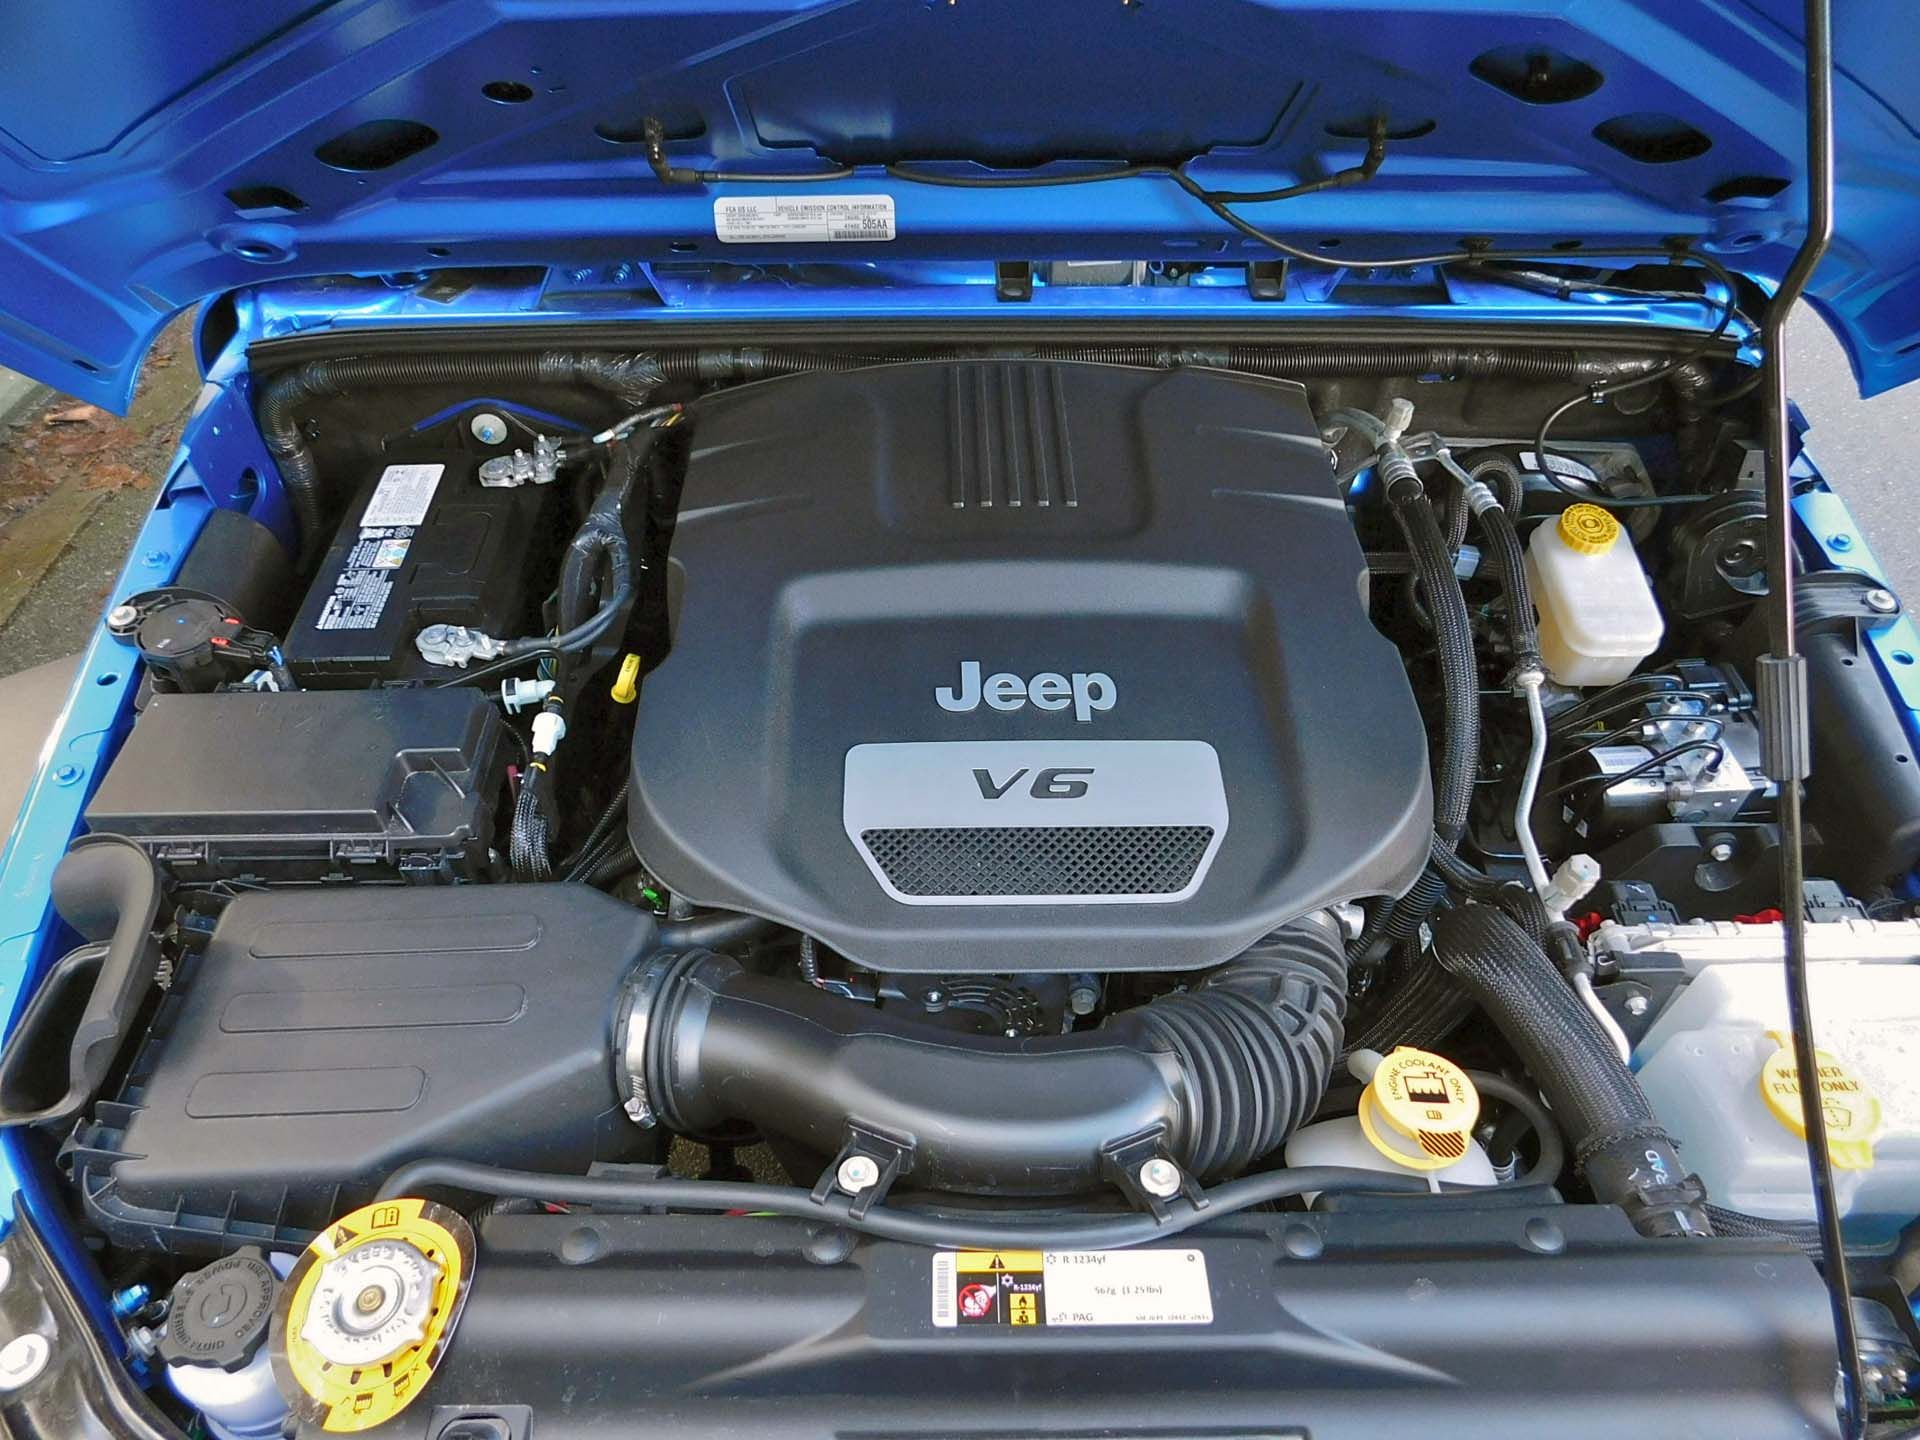 2016 Jeep Wrangler Sport V6 engine - under the hood